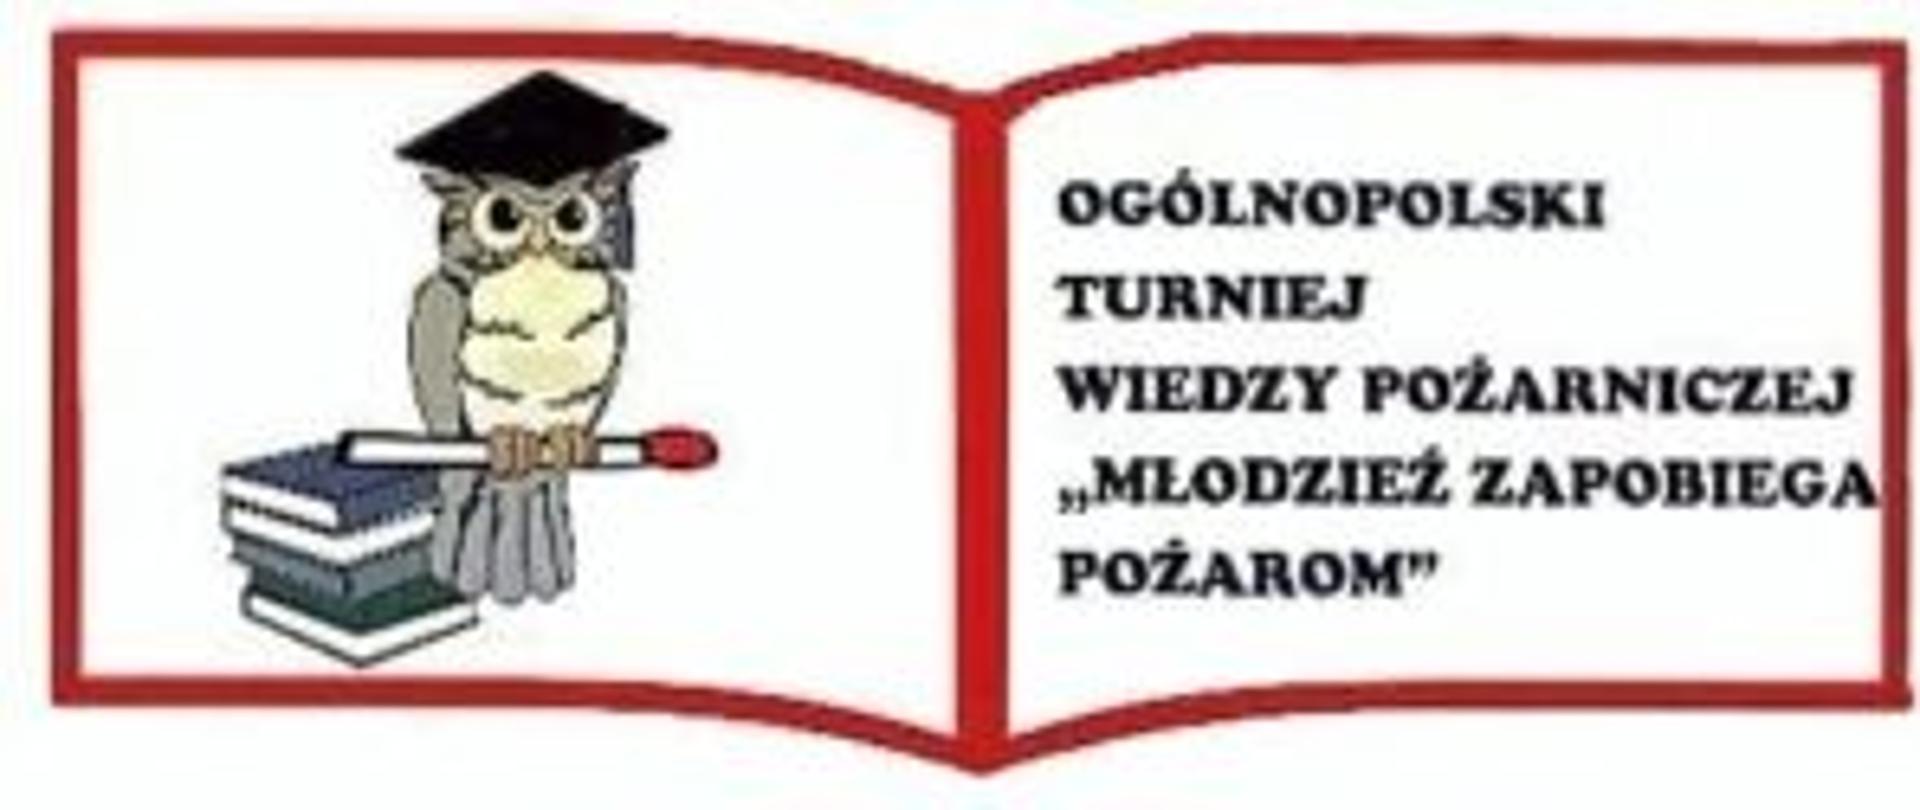 Zdjęcie poglądowe z logo Ogólnopolskiego Turnieju Wiedzy Pożarniczej